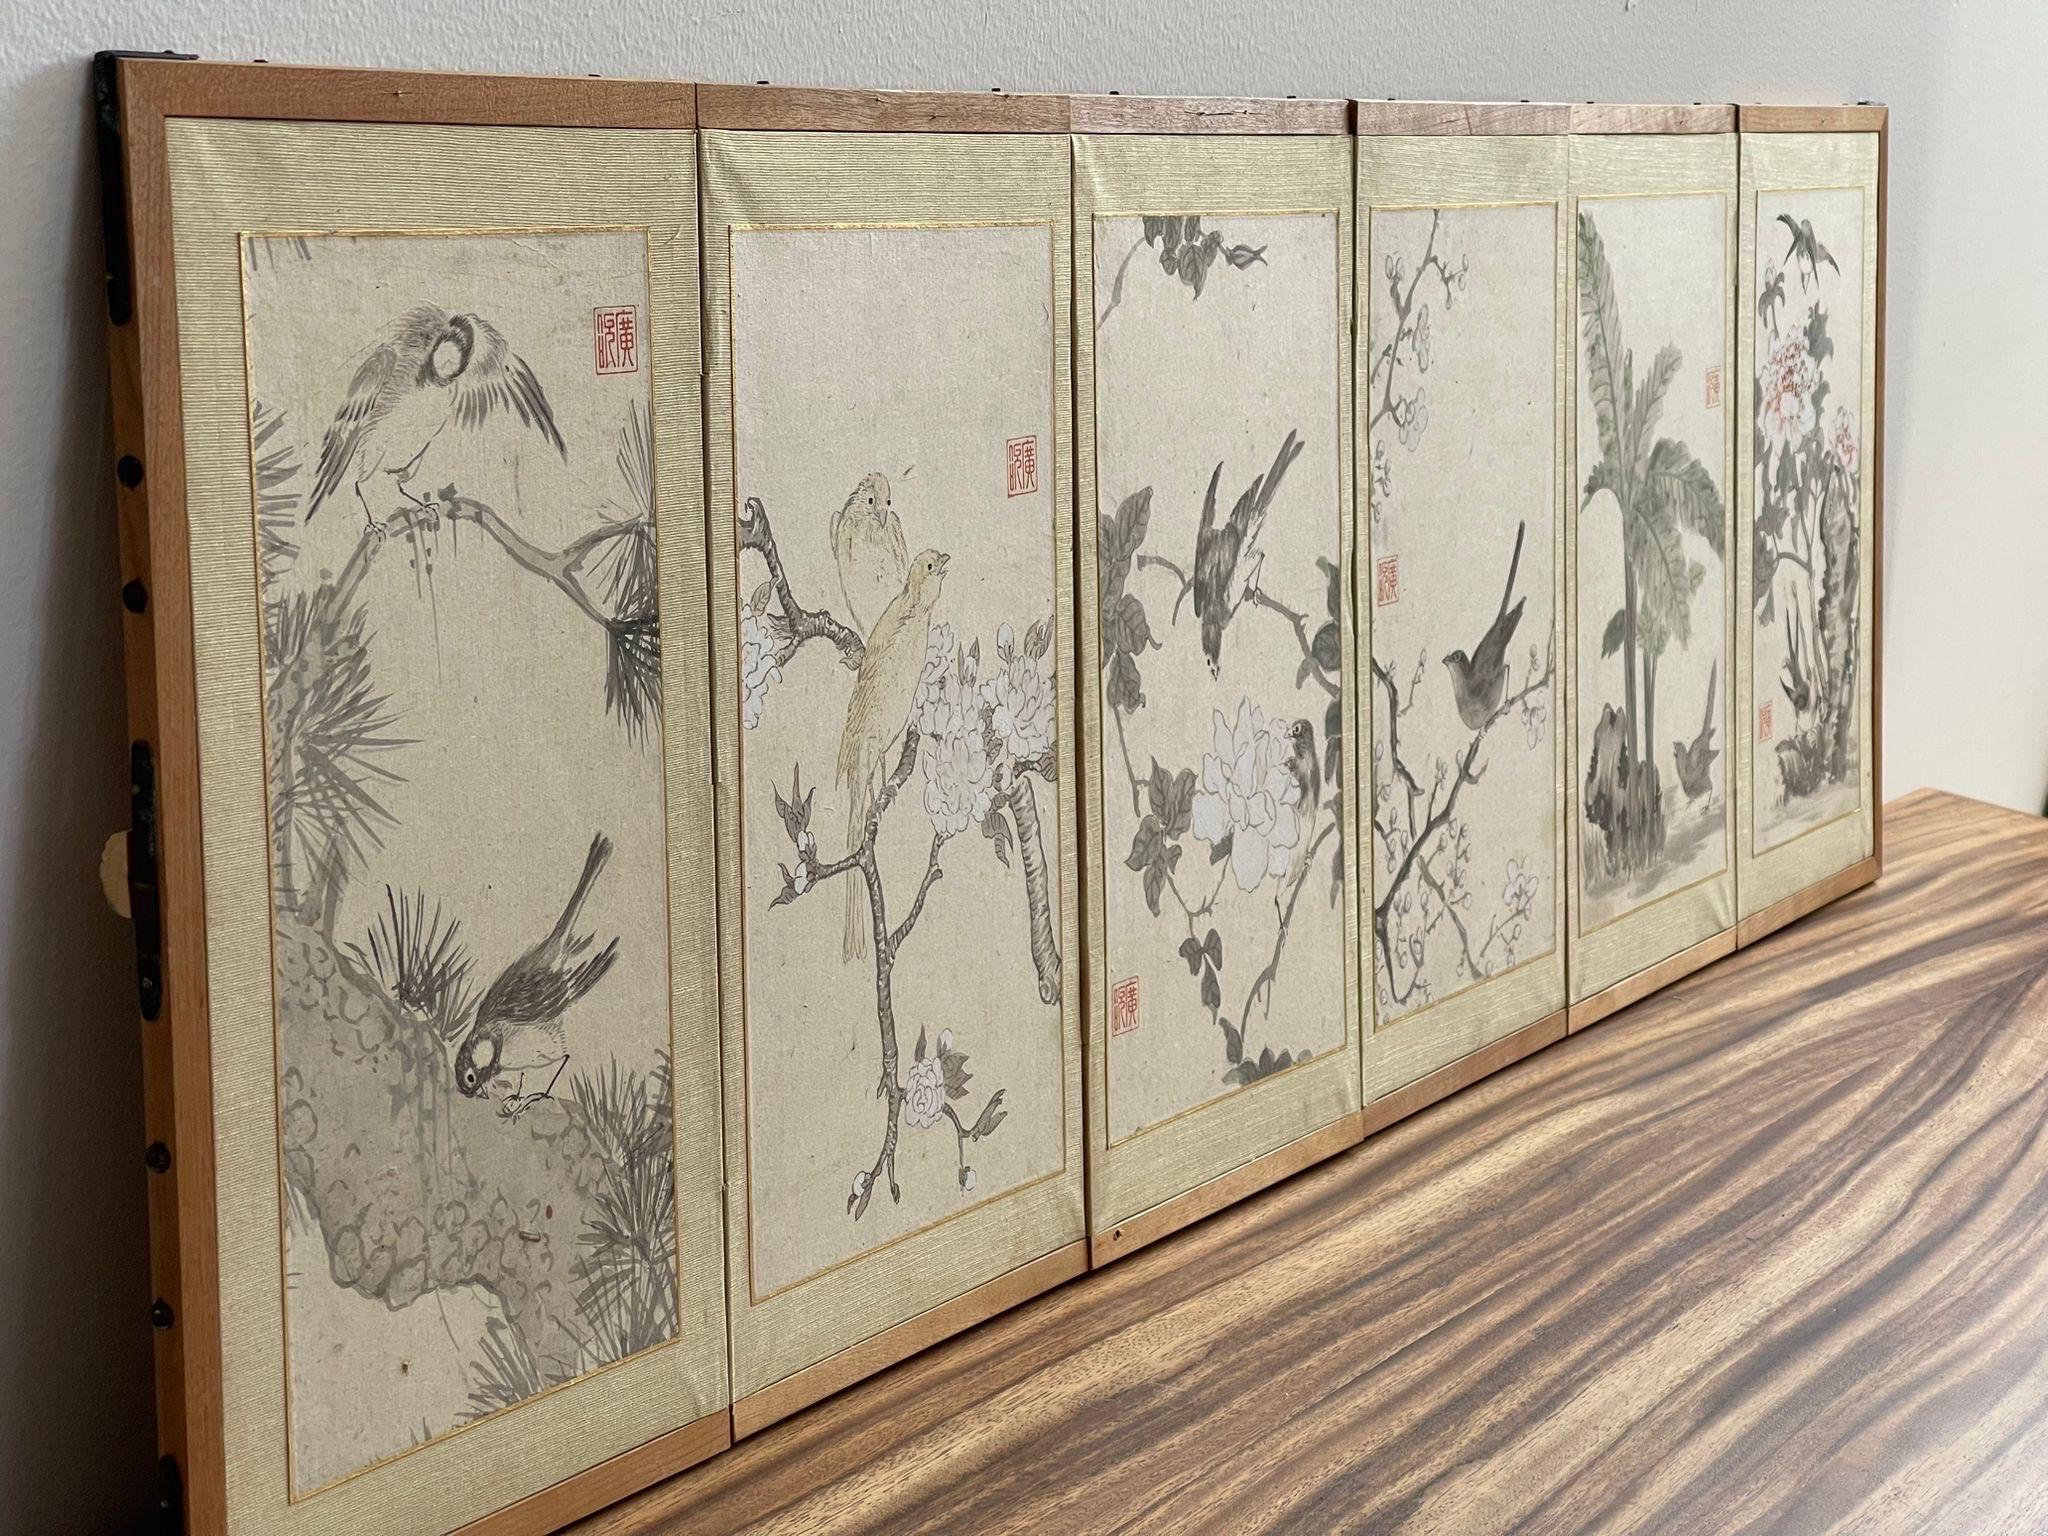 Dieses Stück besteht aus 6 verschiedenen Kunstwerken in einem Rahmen. Motive von Naturelementen, Vögeln und Blumen. Rahmen aus Holz. Vintage Condition Konsistent mit dem Alter wie abgebildet.

Abmessungen. 50 1/2 B; 3/4 T; 15 G